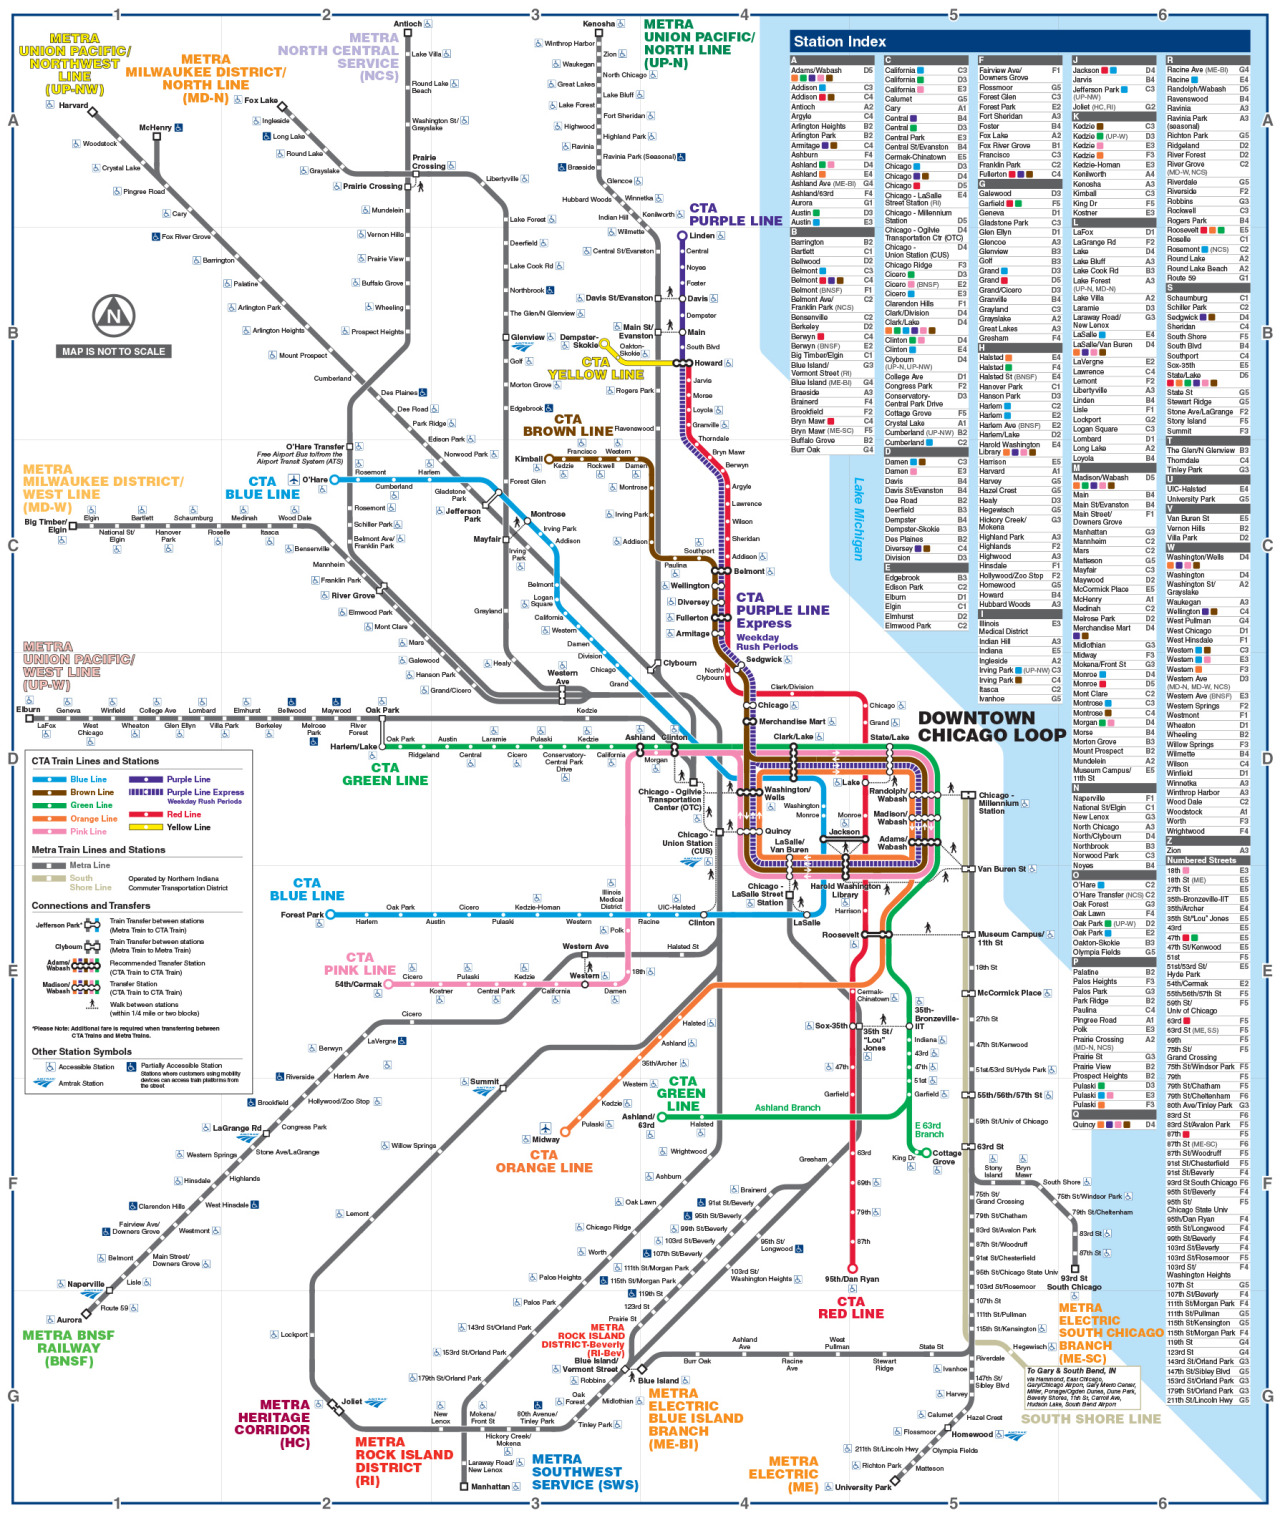 Official Map: Chicago Regional Transportation Authority â€œRail Connectionsâ€ Map, 2015
Submitted by Michael Whalen (amongst others), who says:
I just stumbled upon this map showing all CTA/Metra/SouthShore train connections in Chicago. Thereâ€™s a lot...